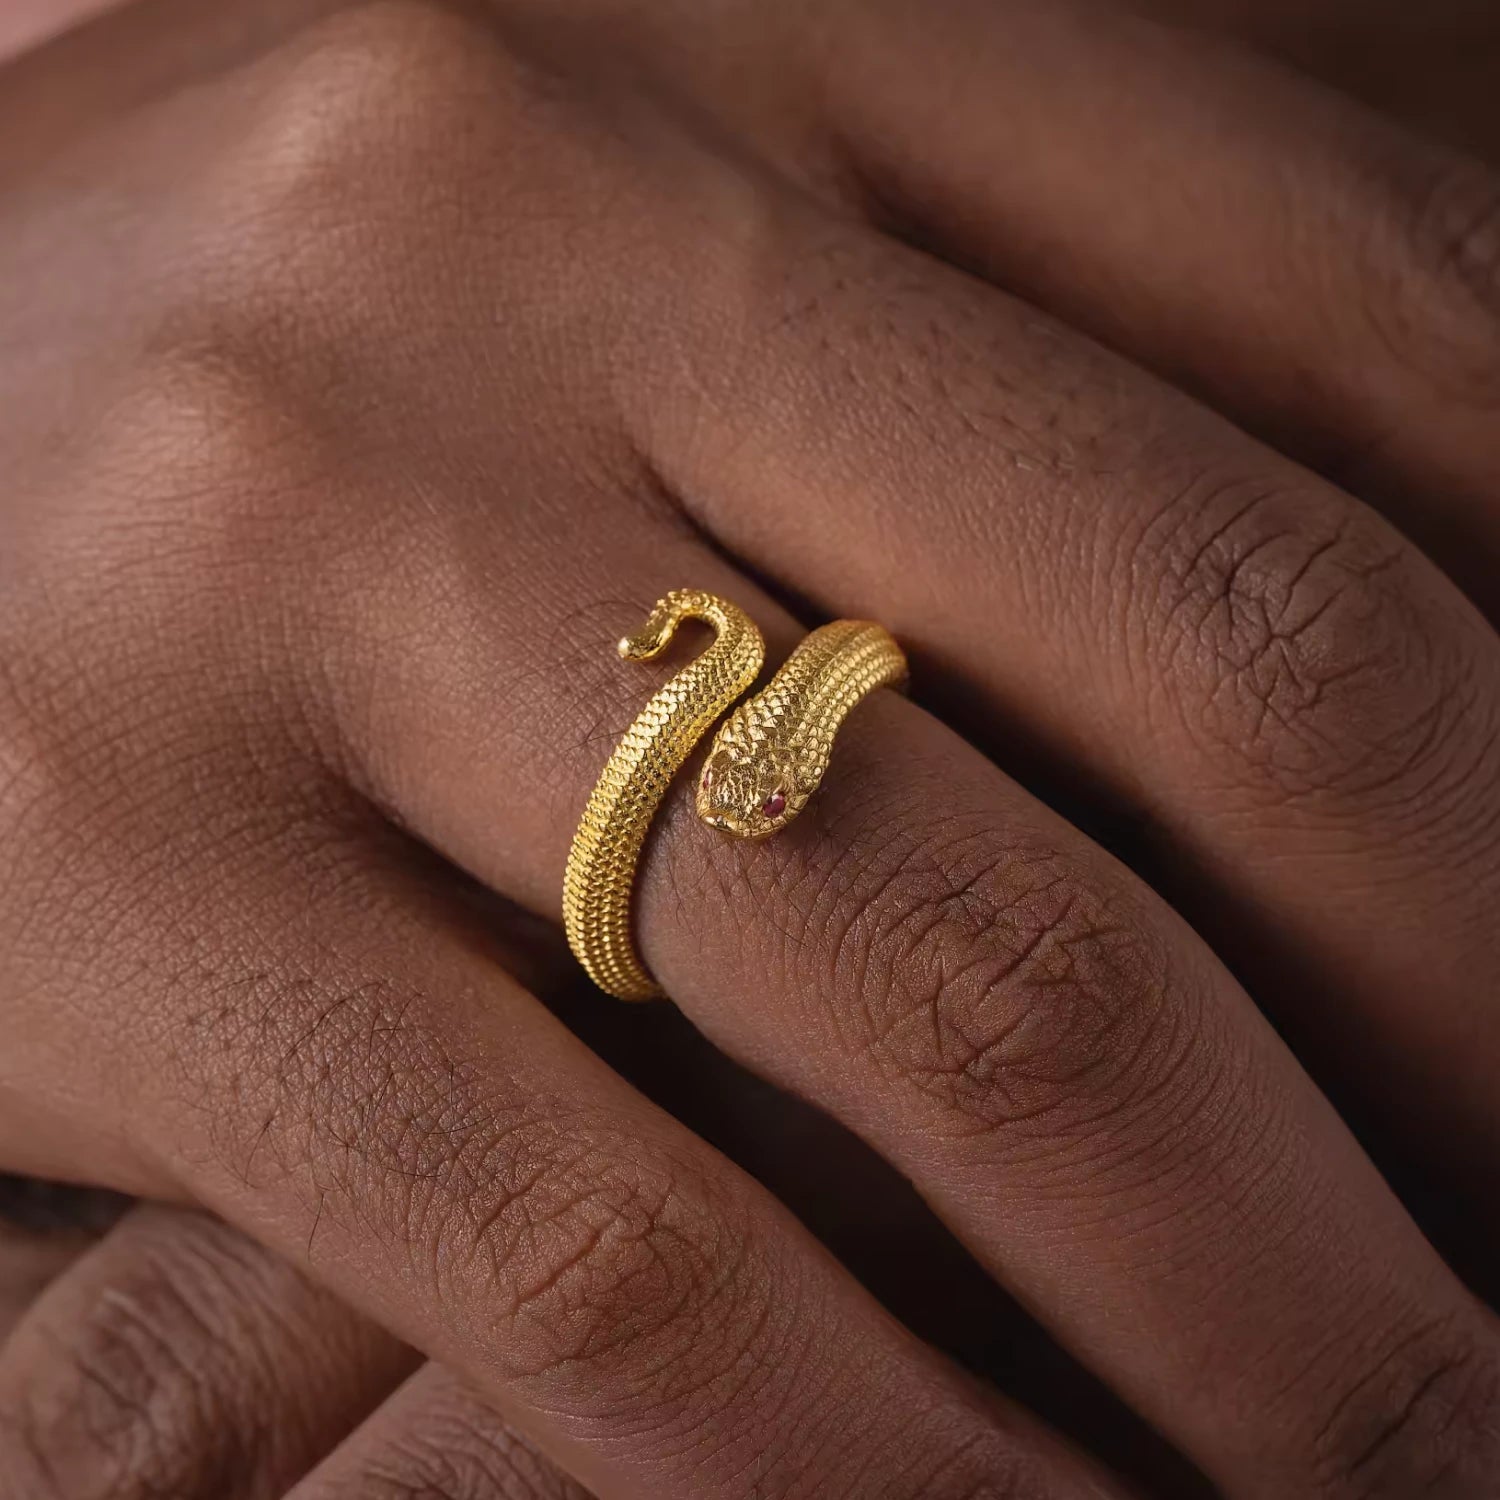 Buy 18K Gold Snake Ring Mens Ring Rings for Men Thin Spiral Snake Ring Mens  Jewellery Mens Snake Ring Gold / Silver Black Rings Men Online in India -  Etsy